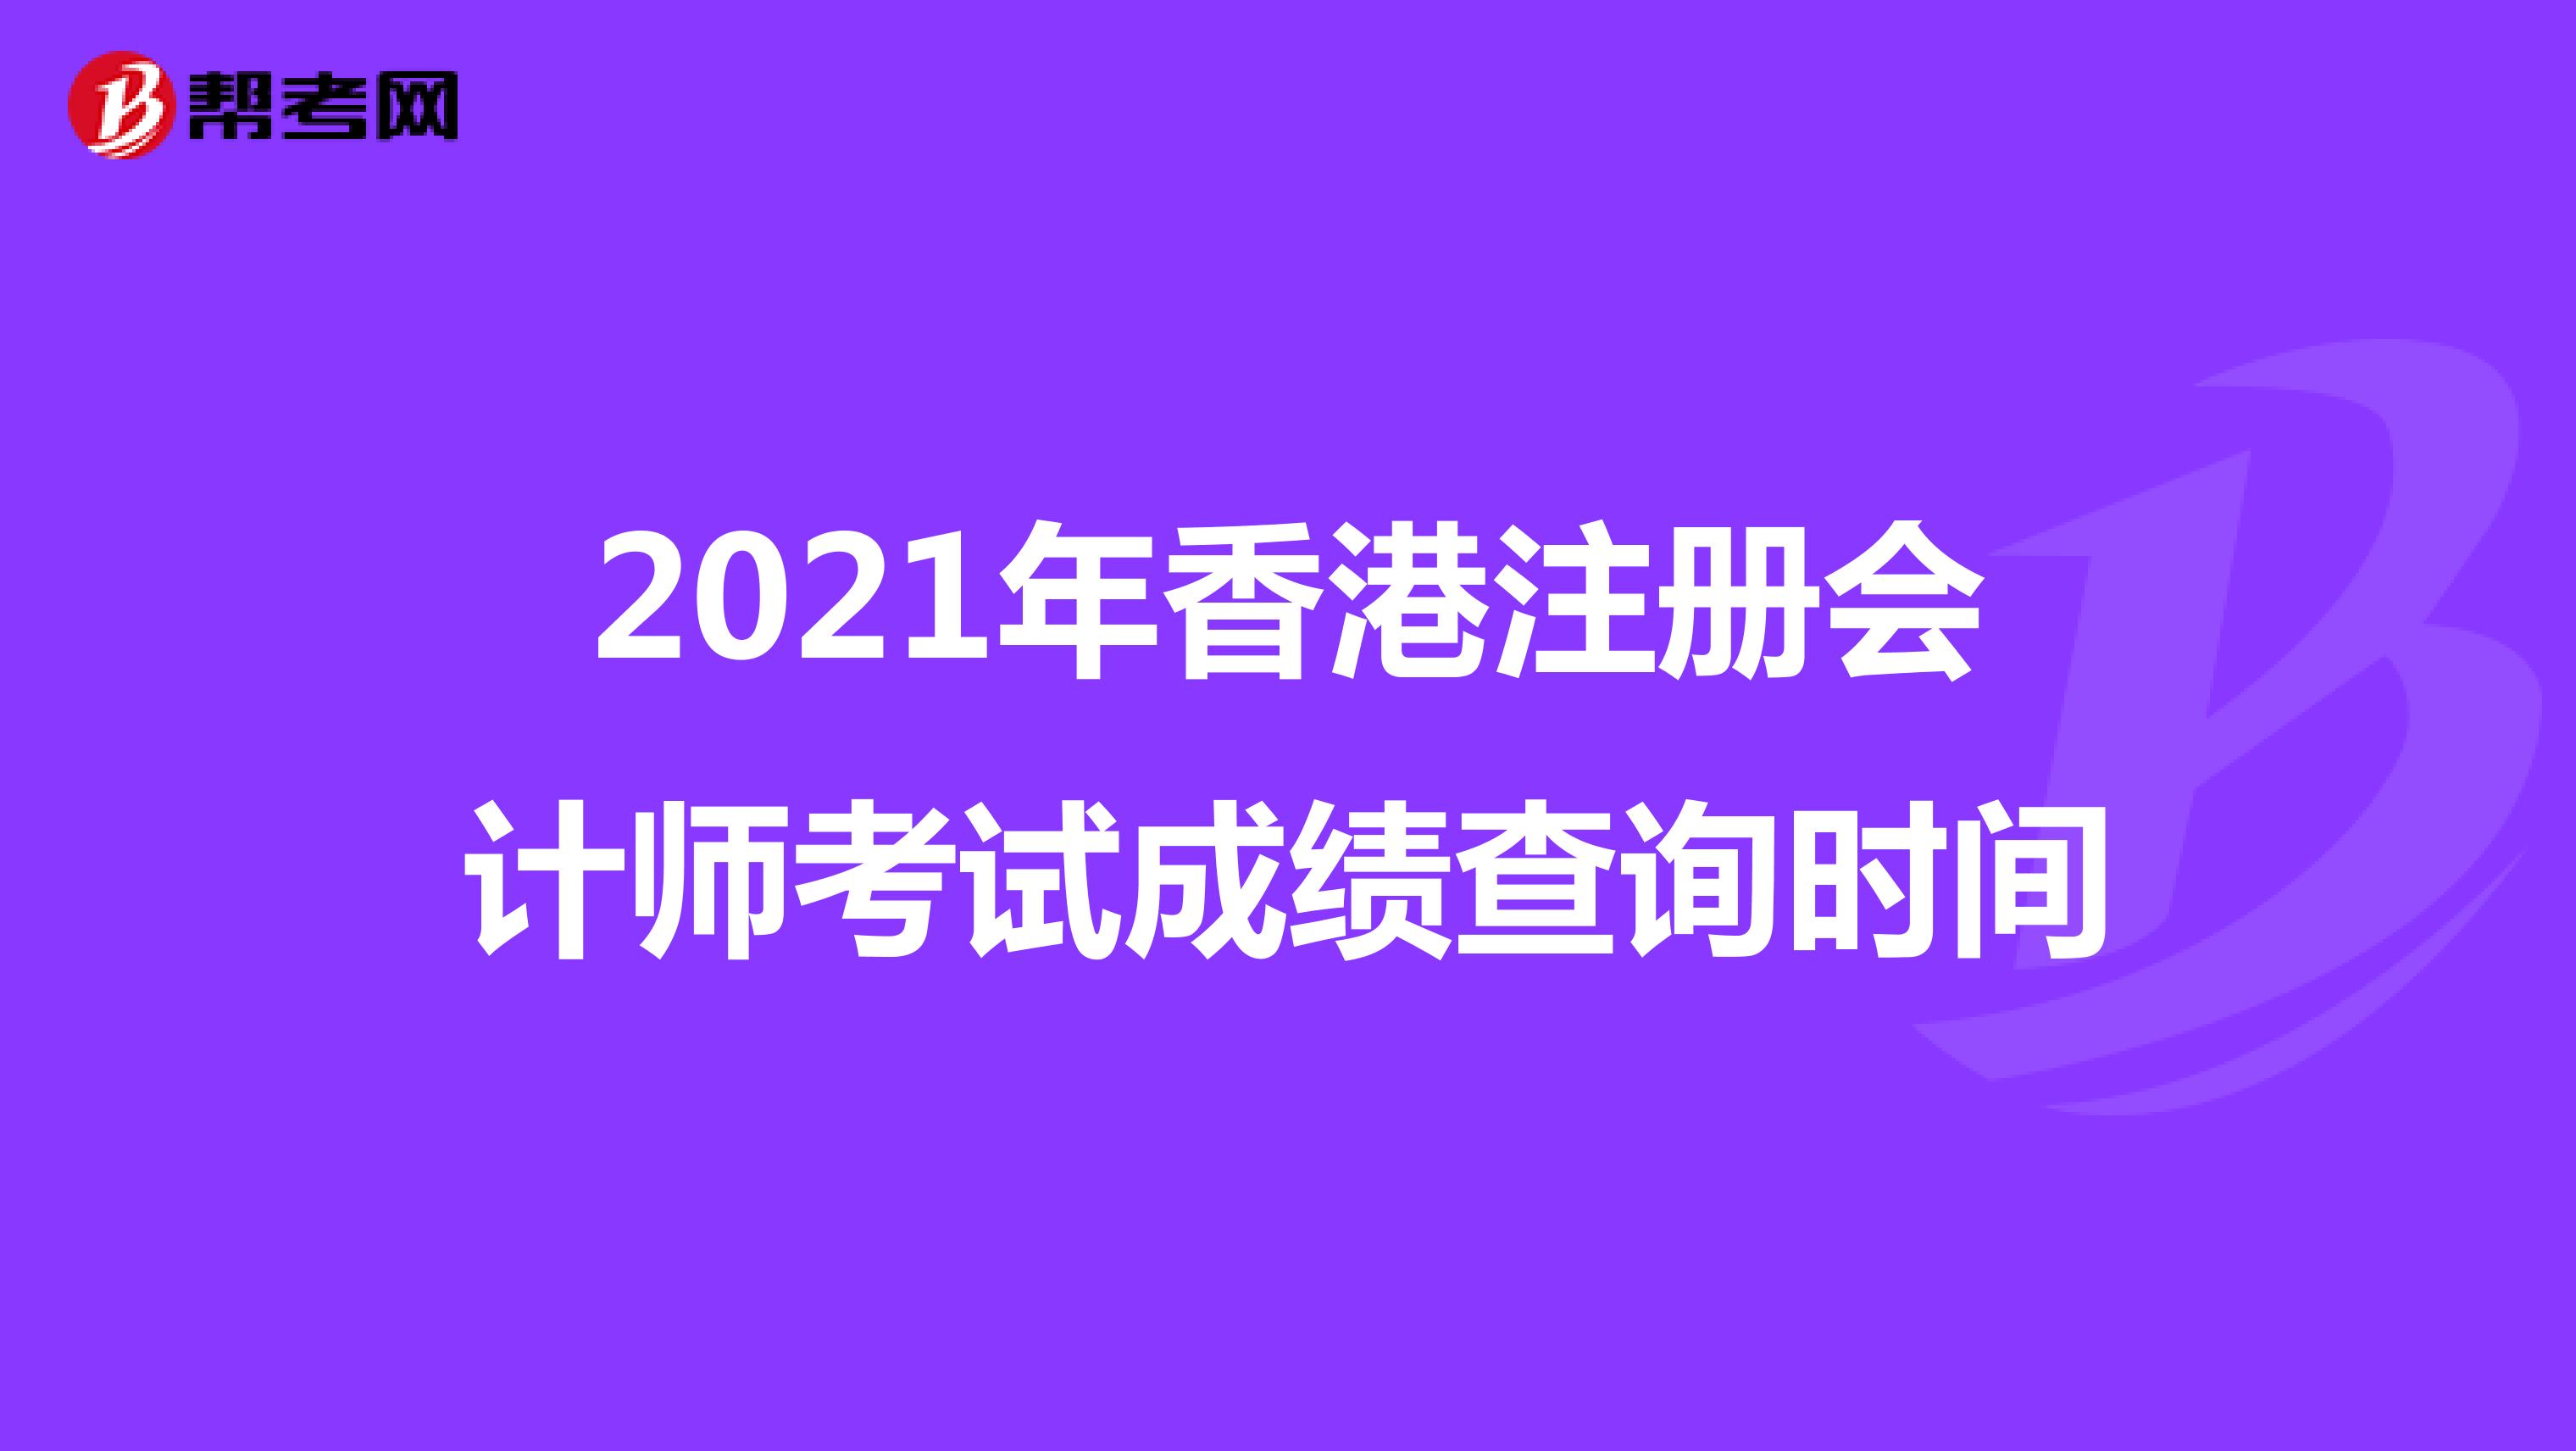 2021年香港注册会计师考试成绩查询时间